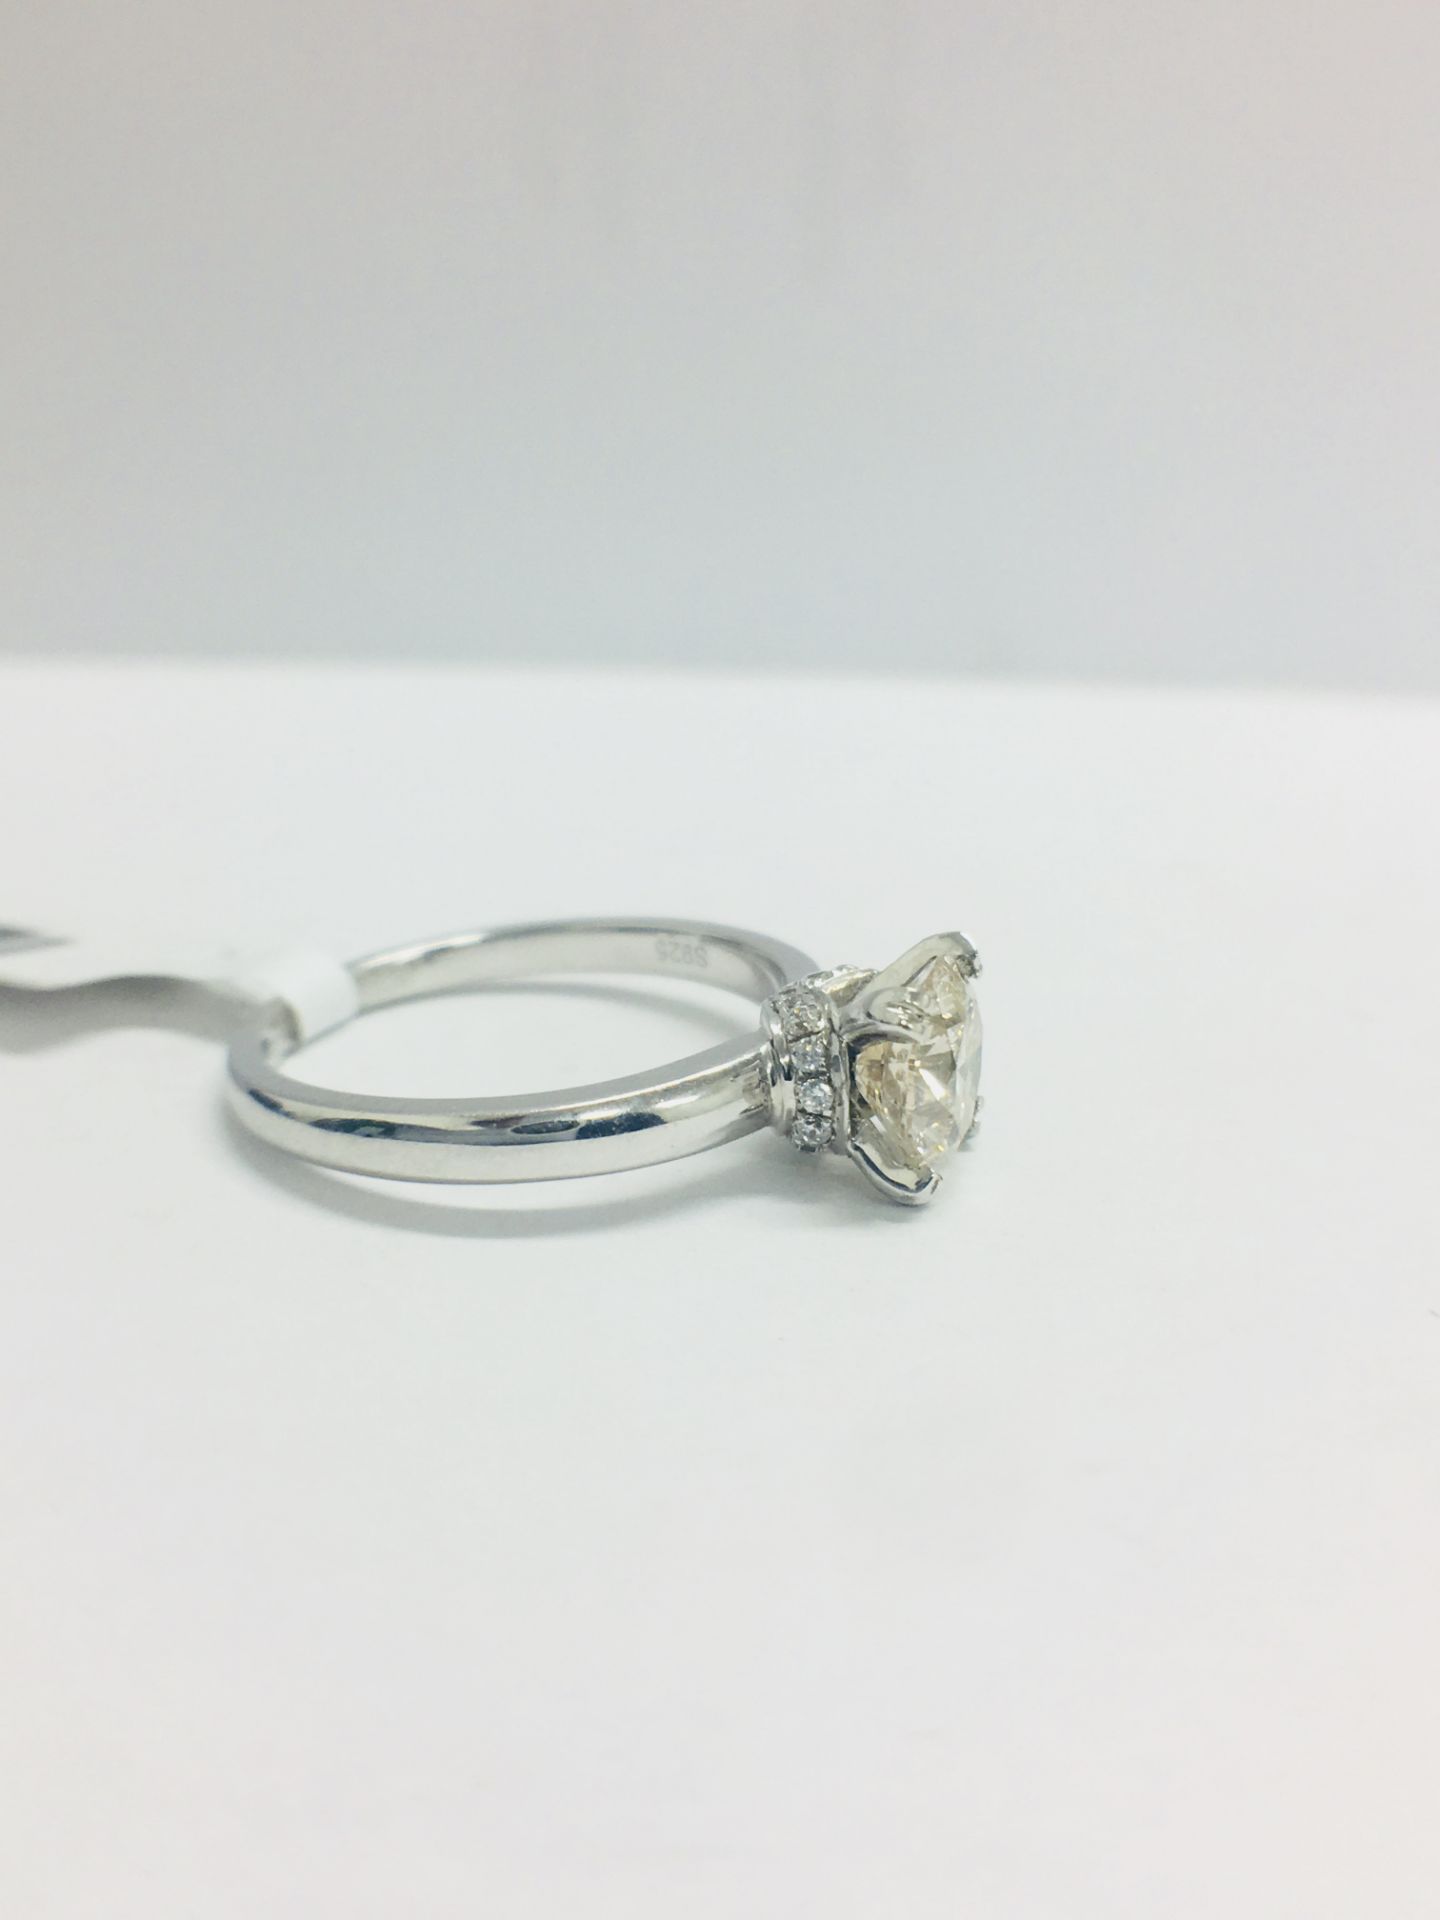 1ct Diamond Solitaire ring set in Platinum diamnd setting - Image 10 of 13